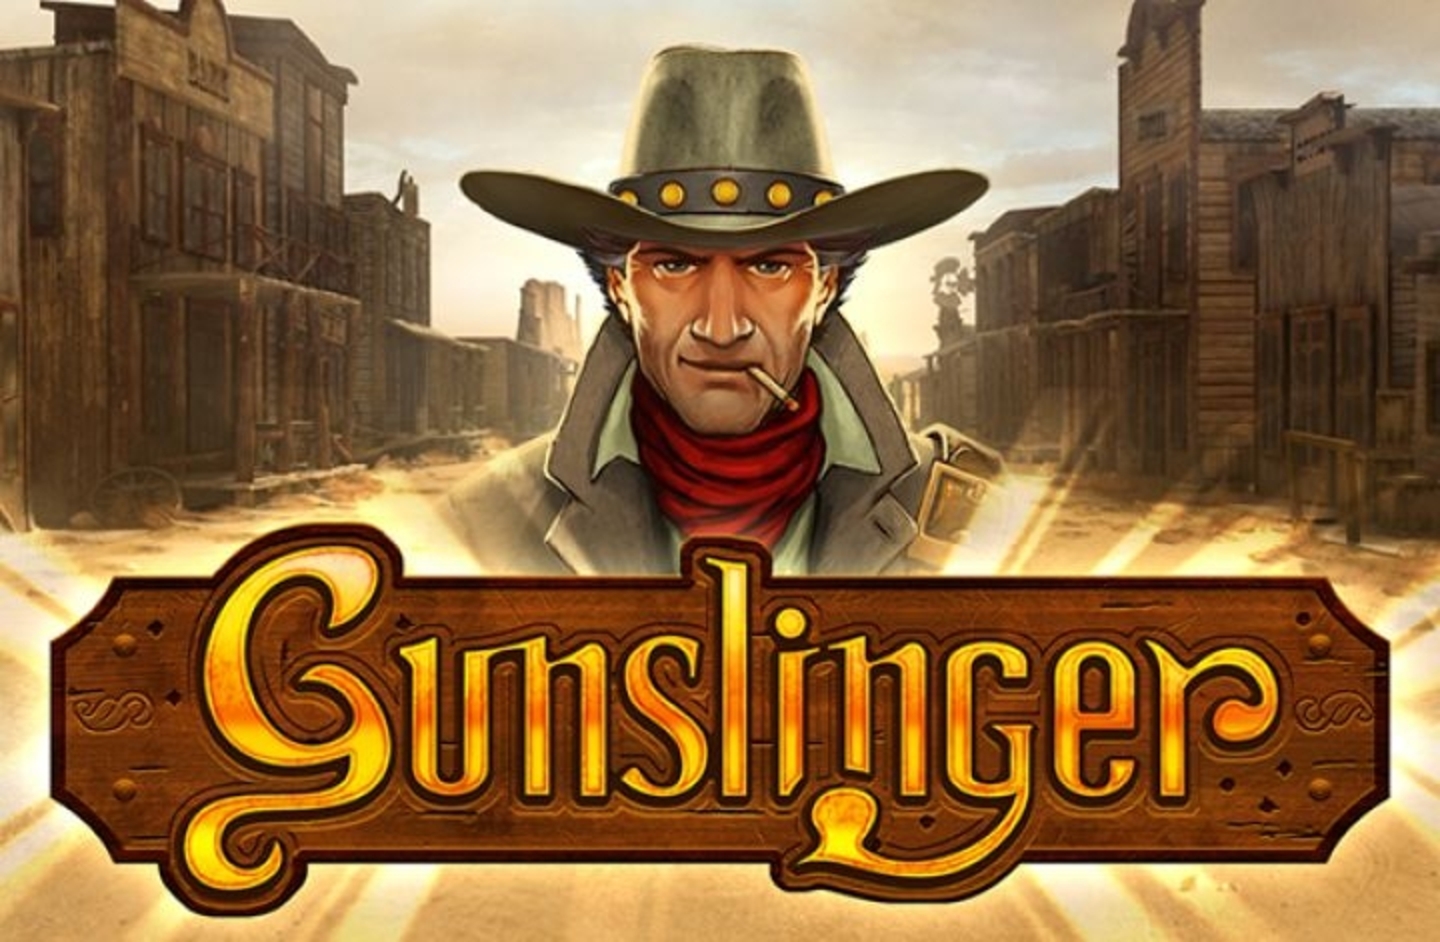 The Gunslinger Online Slot Demo Game by Playn GO